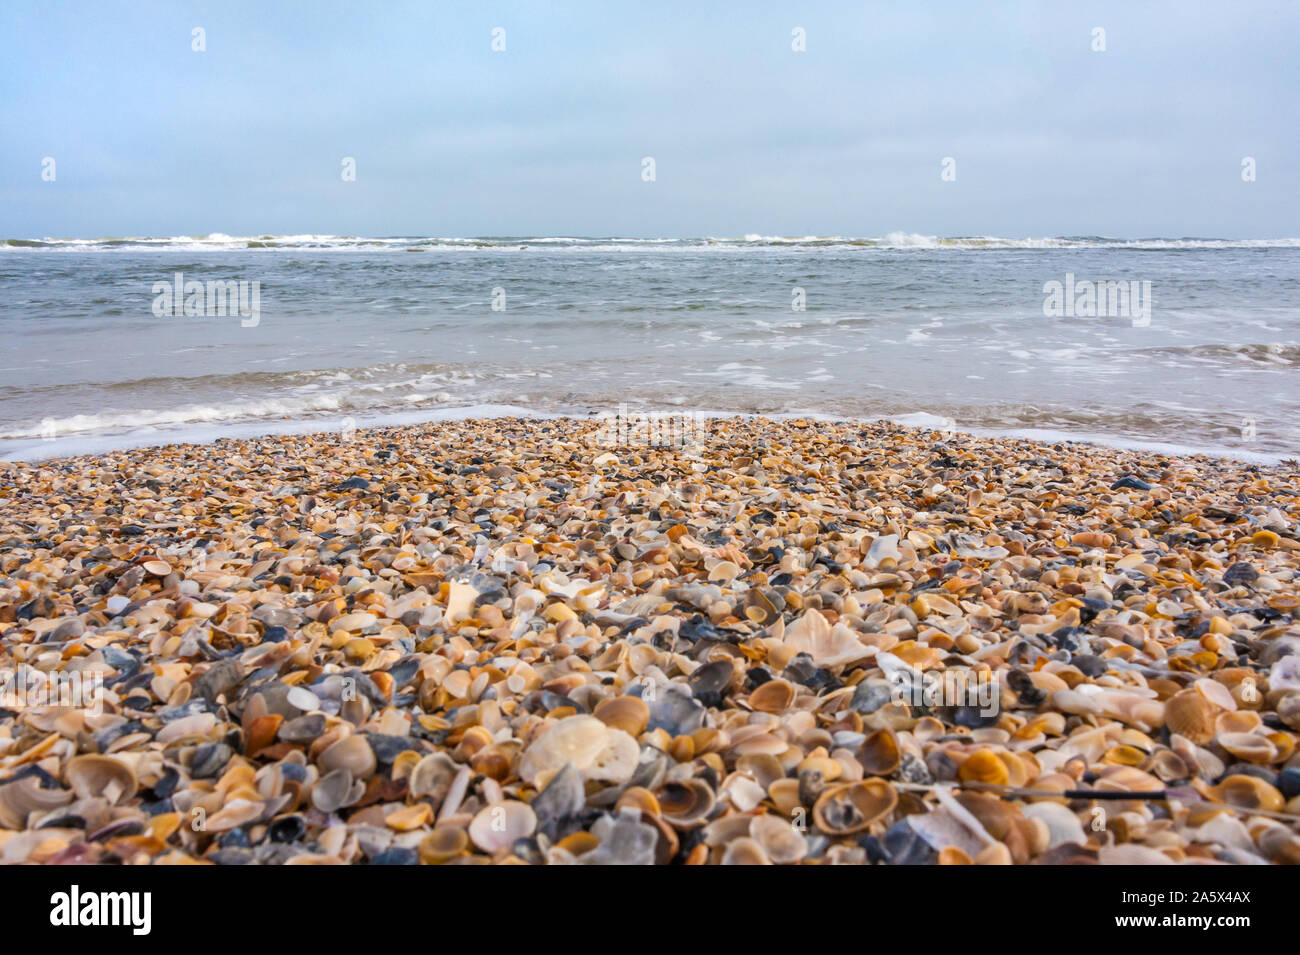 Shell - bedeckte Küste in Jacksonville Beach auf der nordöstlichen Küste Floridas. (USA) Stockfoto